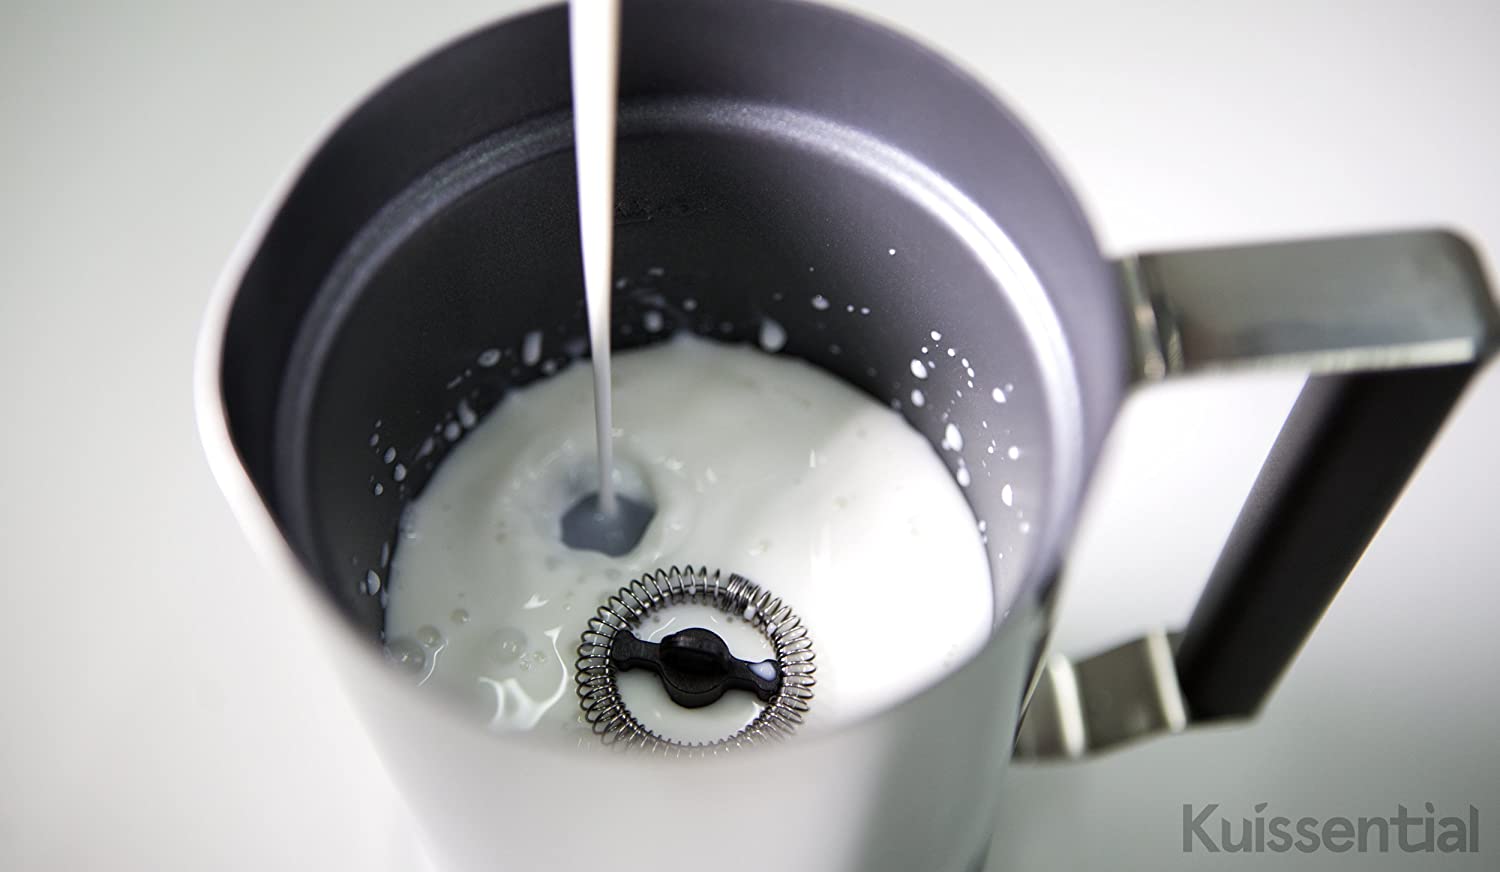 Капучинатор – как выбрать и пользоваться вспенивателем для молока ручным и автоматическим